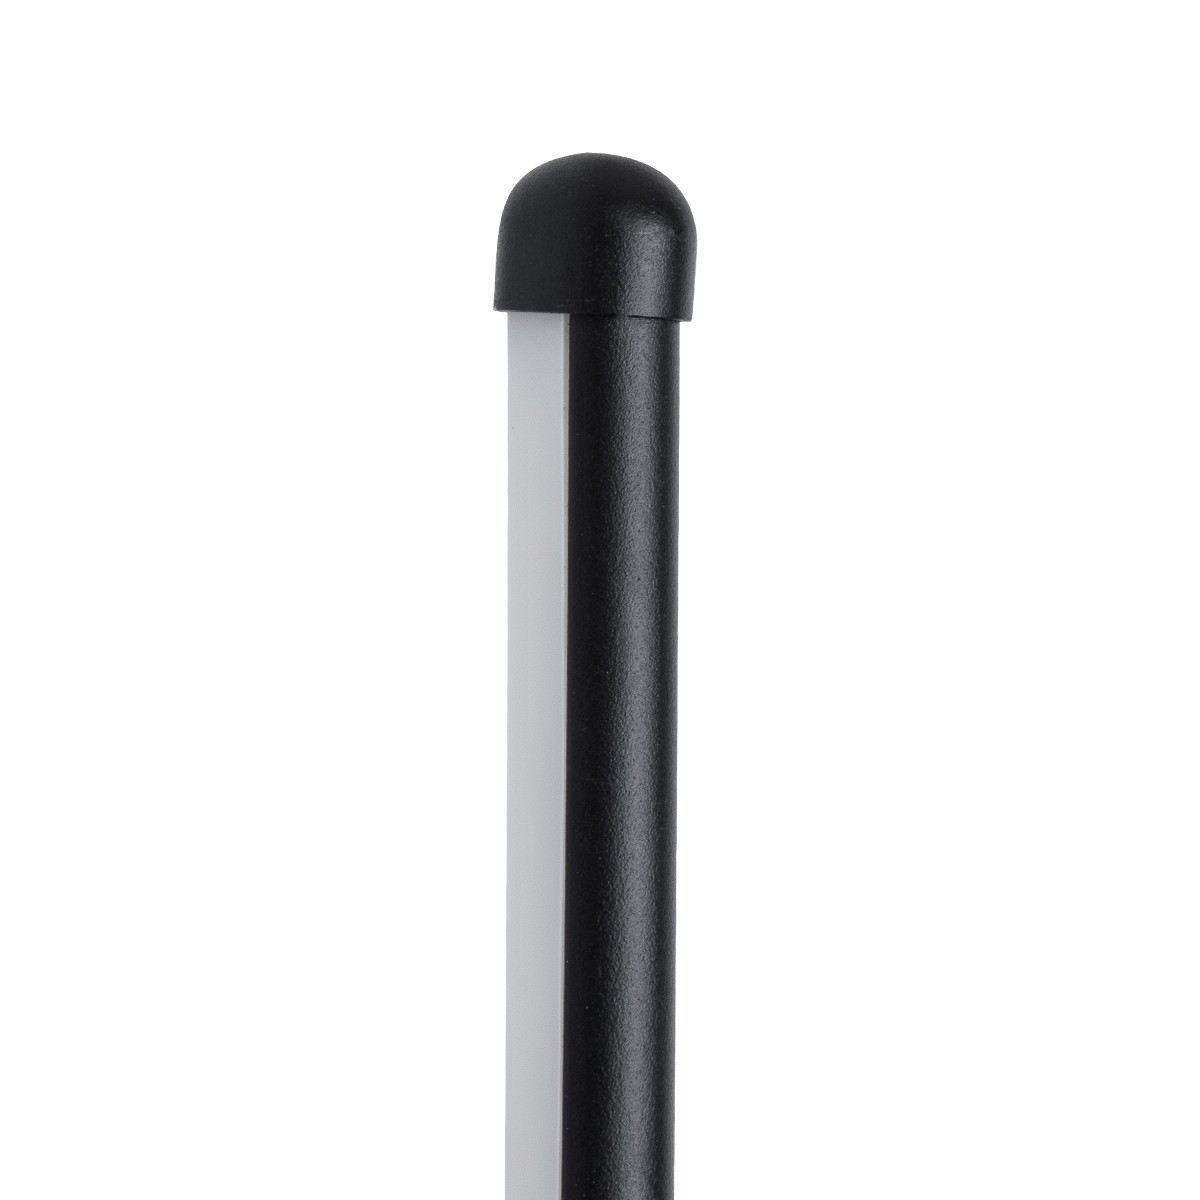 Led Γραμμικό Φωτιστικό Τοίχου - Απλίκα HARLEM 18Watt Μαύρο με Εναλλαγή Φωτισμού Μ5 x Π4 x Υ120cm 61335